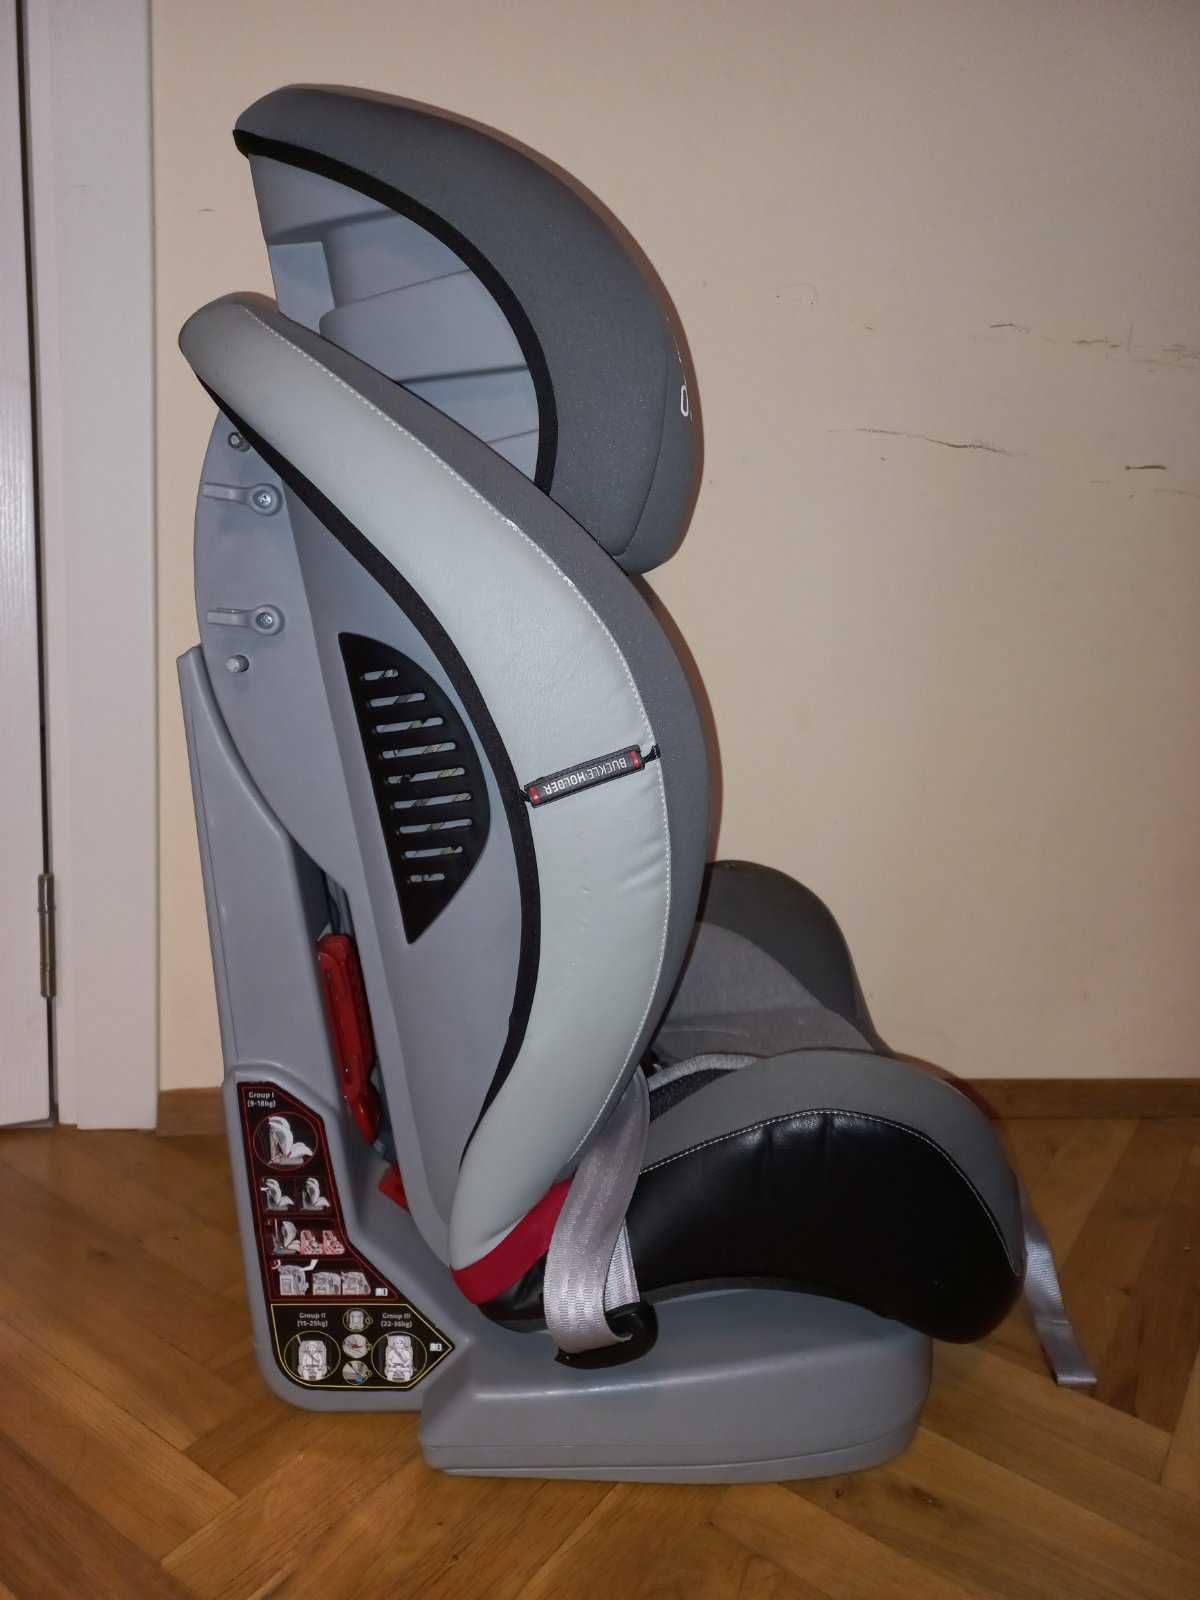 Столче за кола 9-36 кг ESPIRO